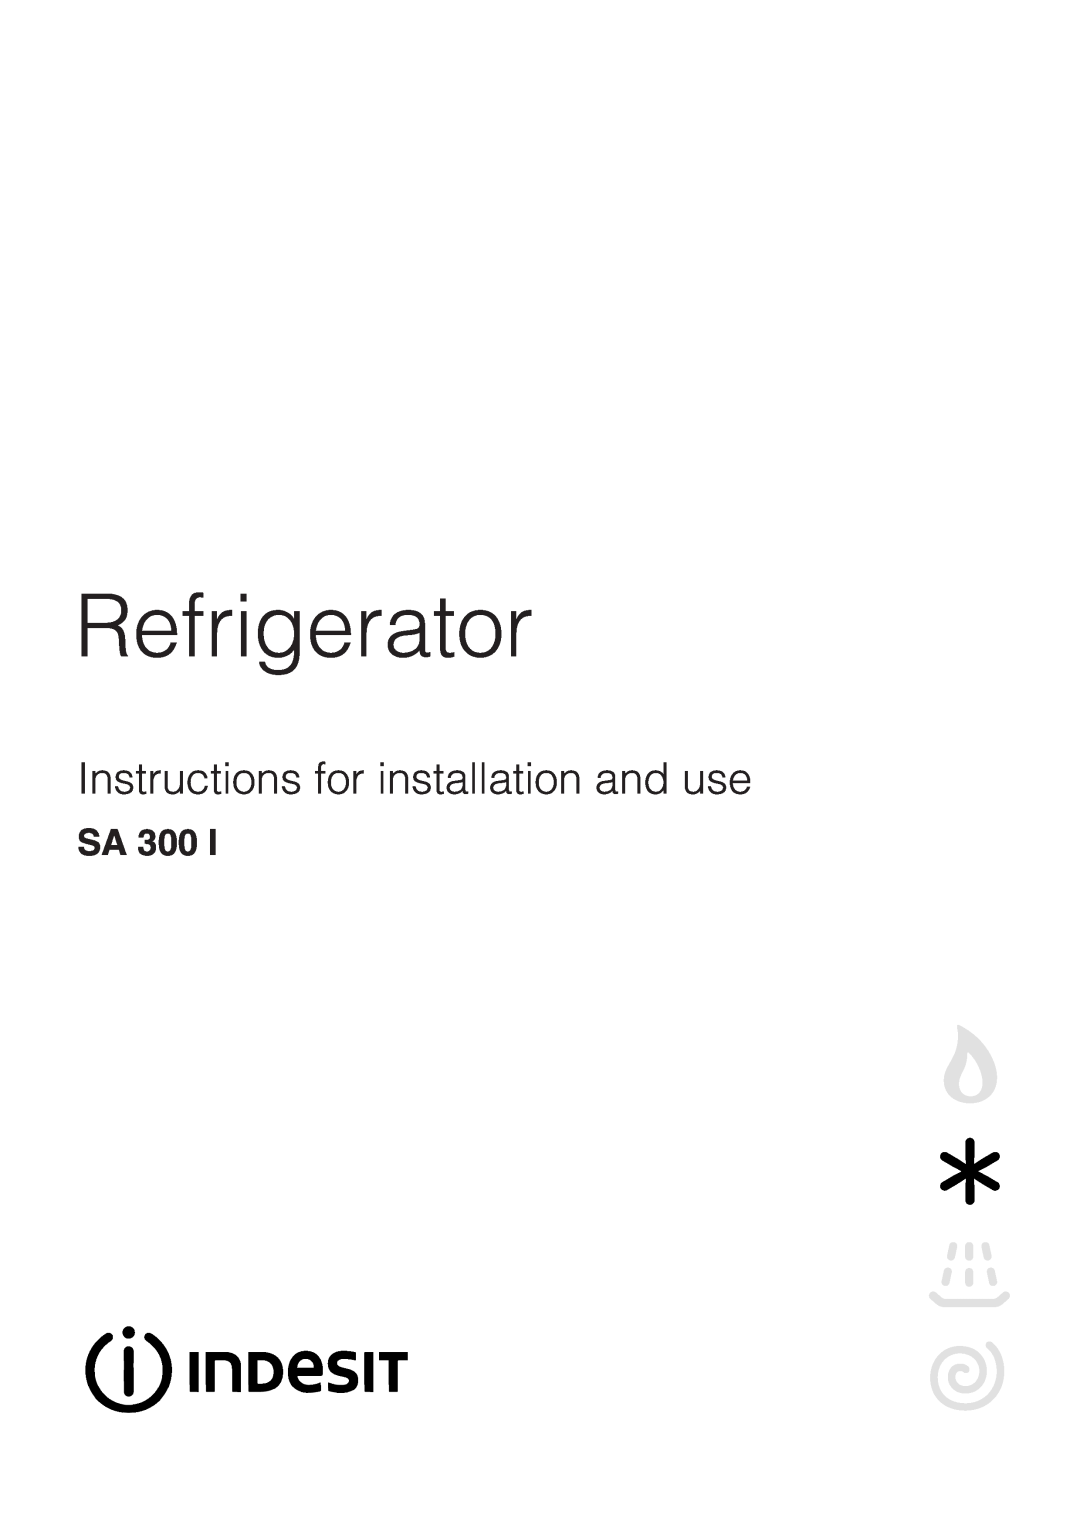 Indesit SA300 I manual Sa, Refrigerator, Instructions for installation and use 